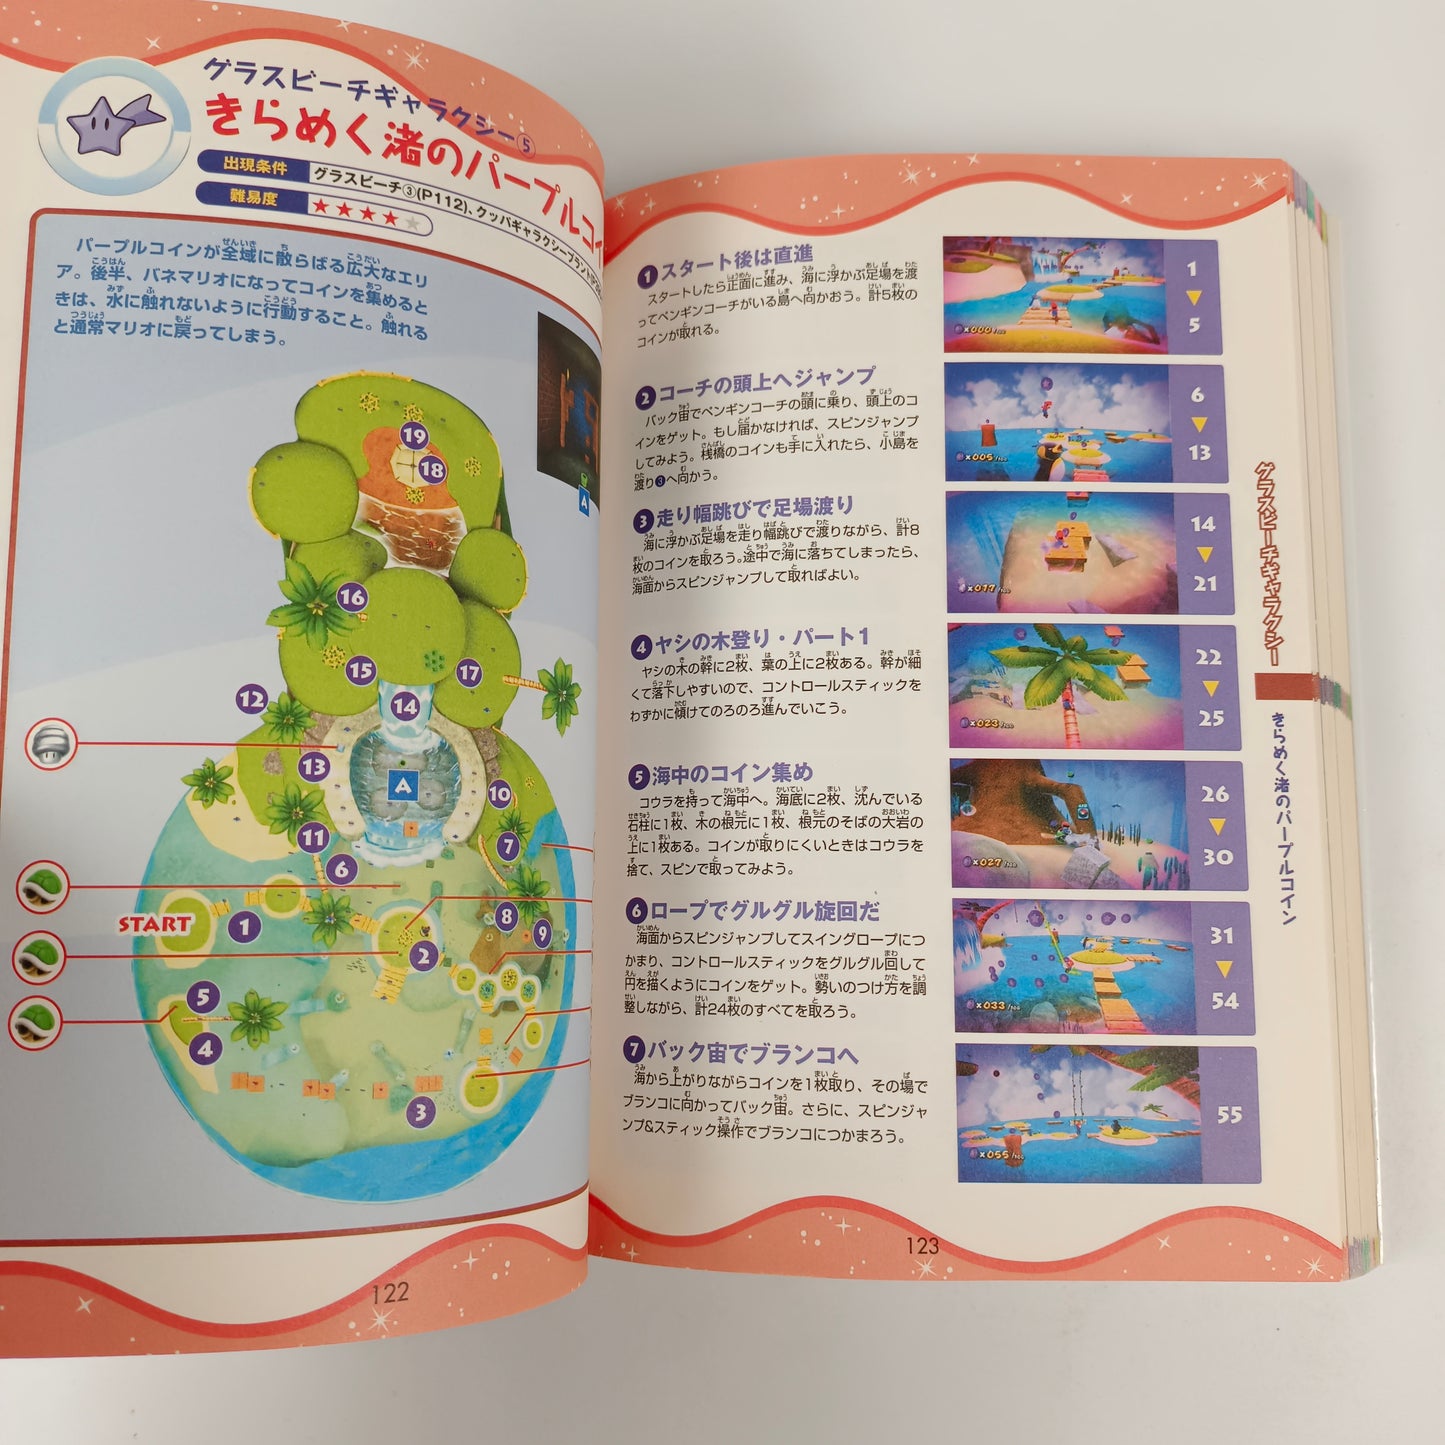 Guide officiel Nintendo de Super Mario Galaxy